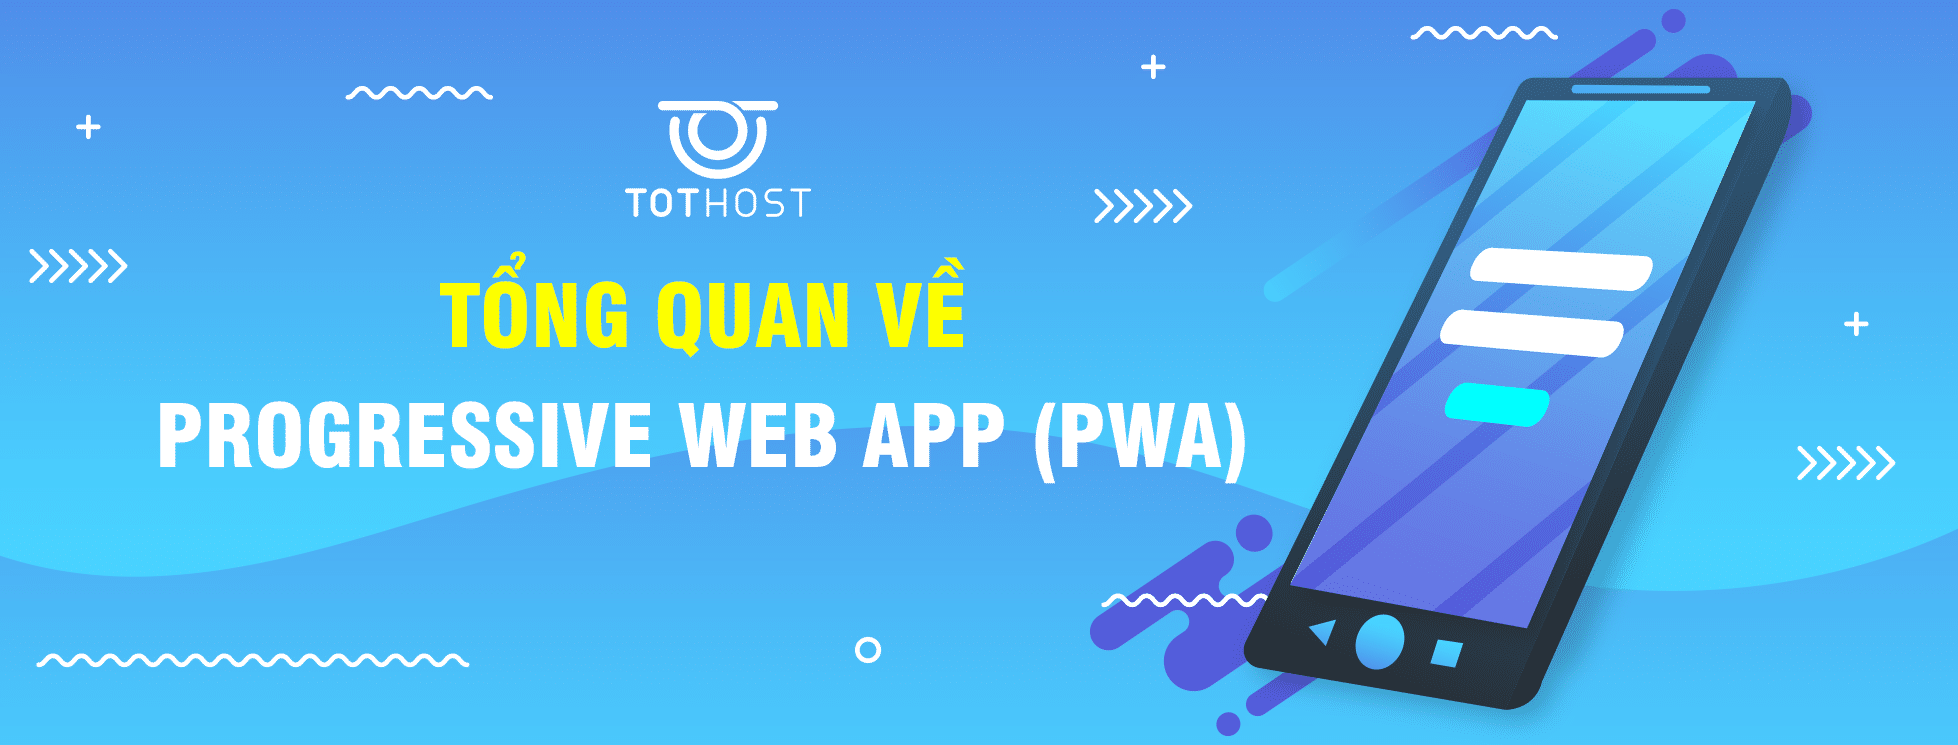 Tổng quan về PWA (Progressive Web App)